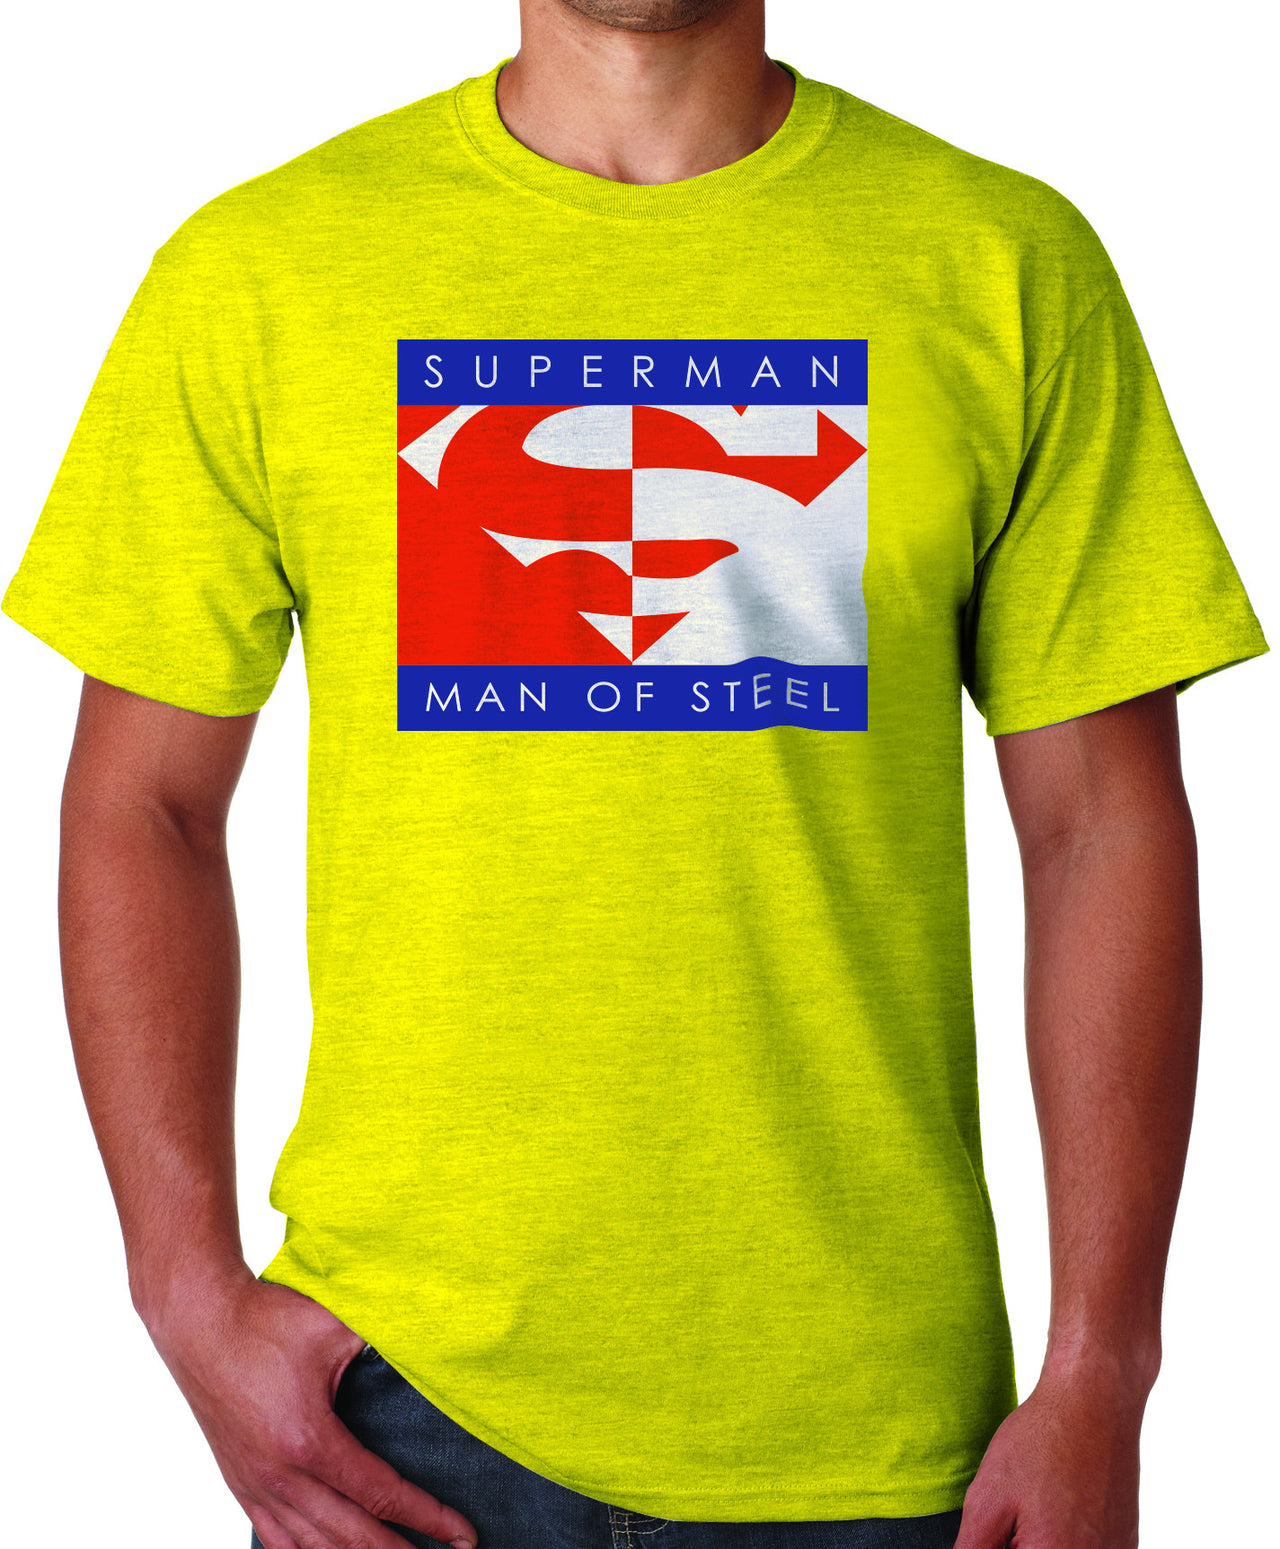 Superman Man of Steel Logo on Yellow Colored Tshirt for Mens - TshirtNow.net - 1